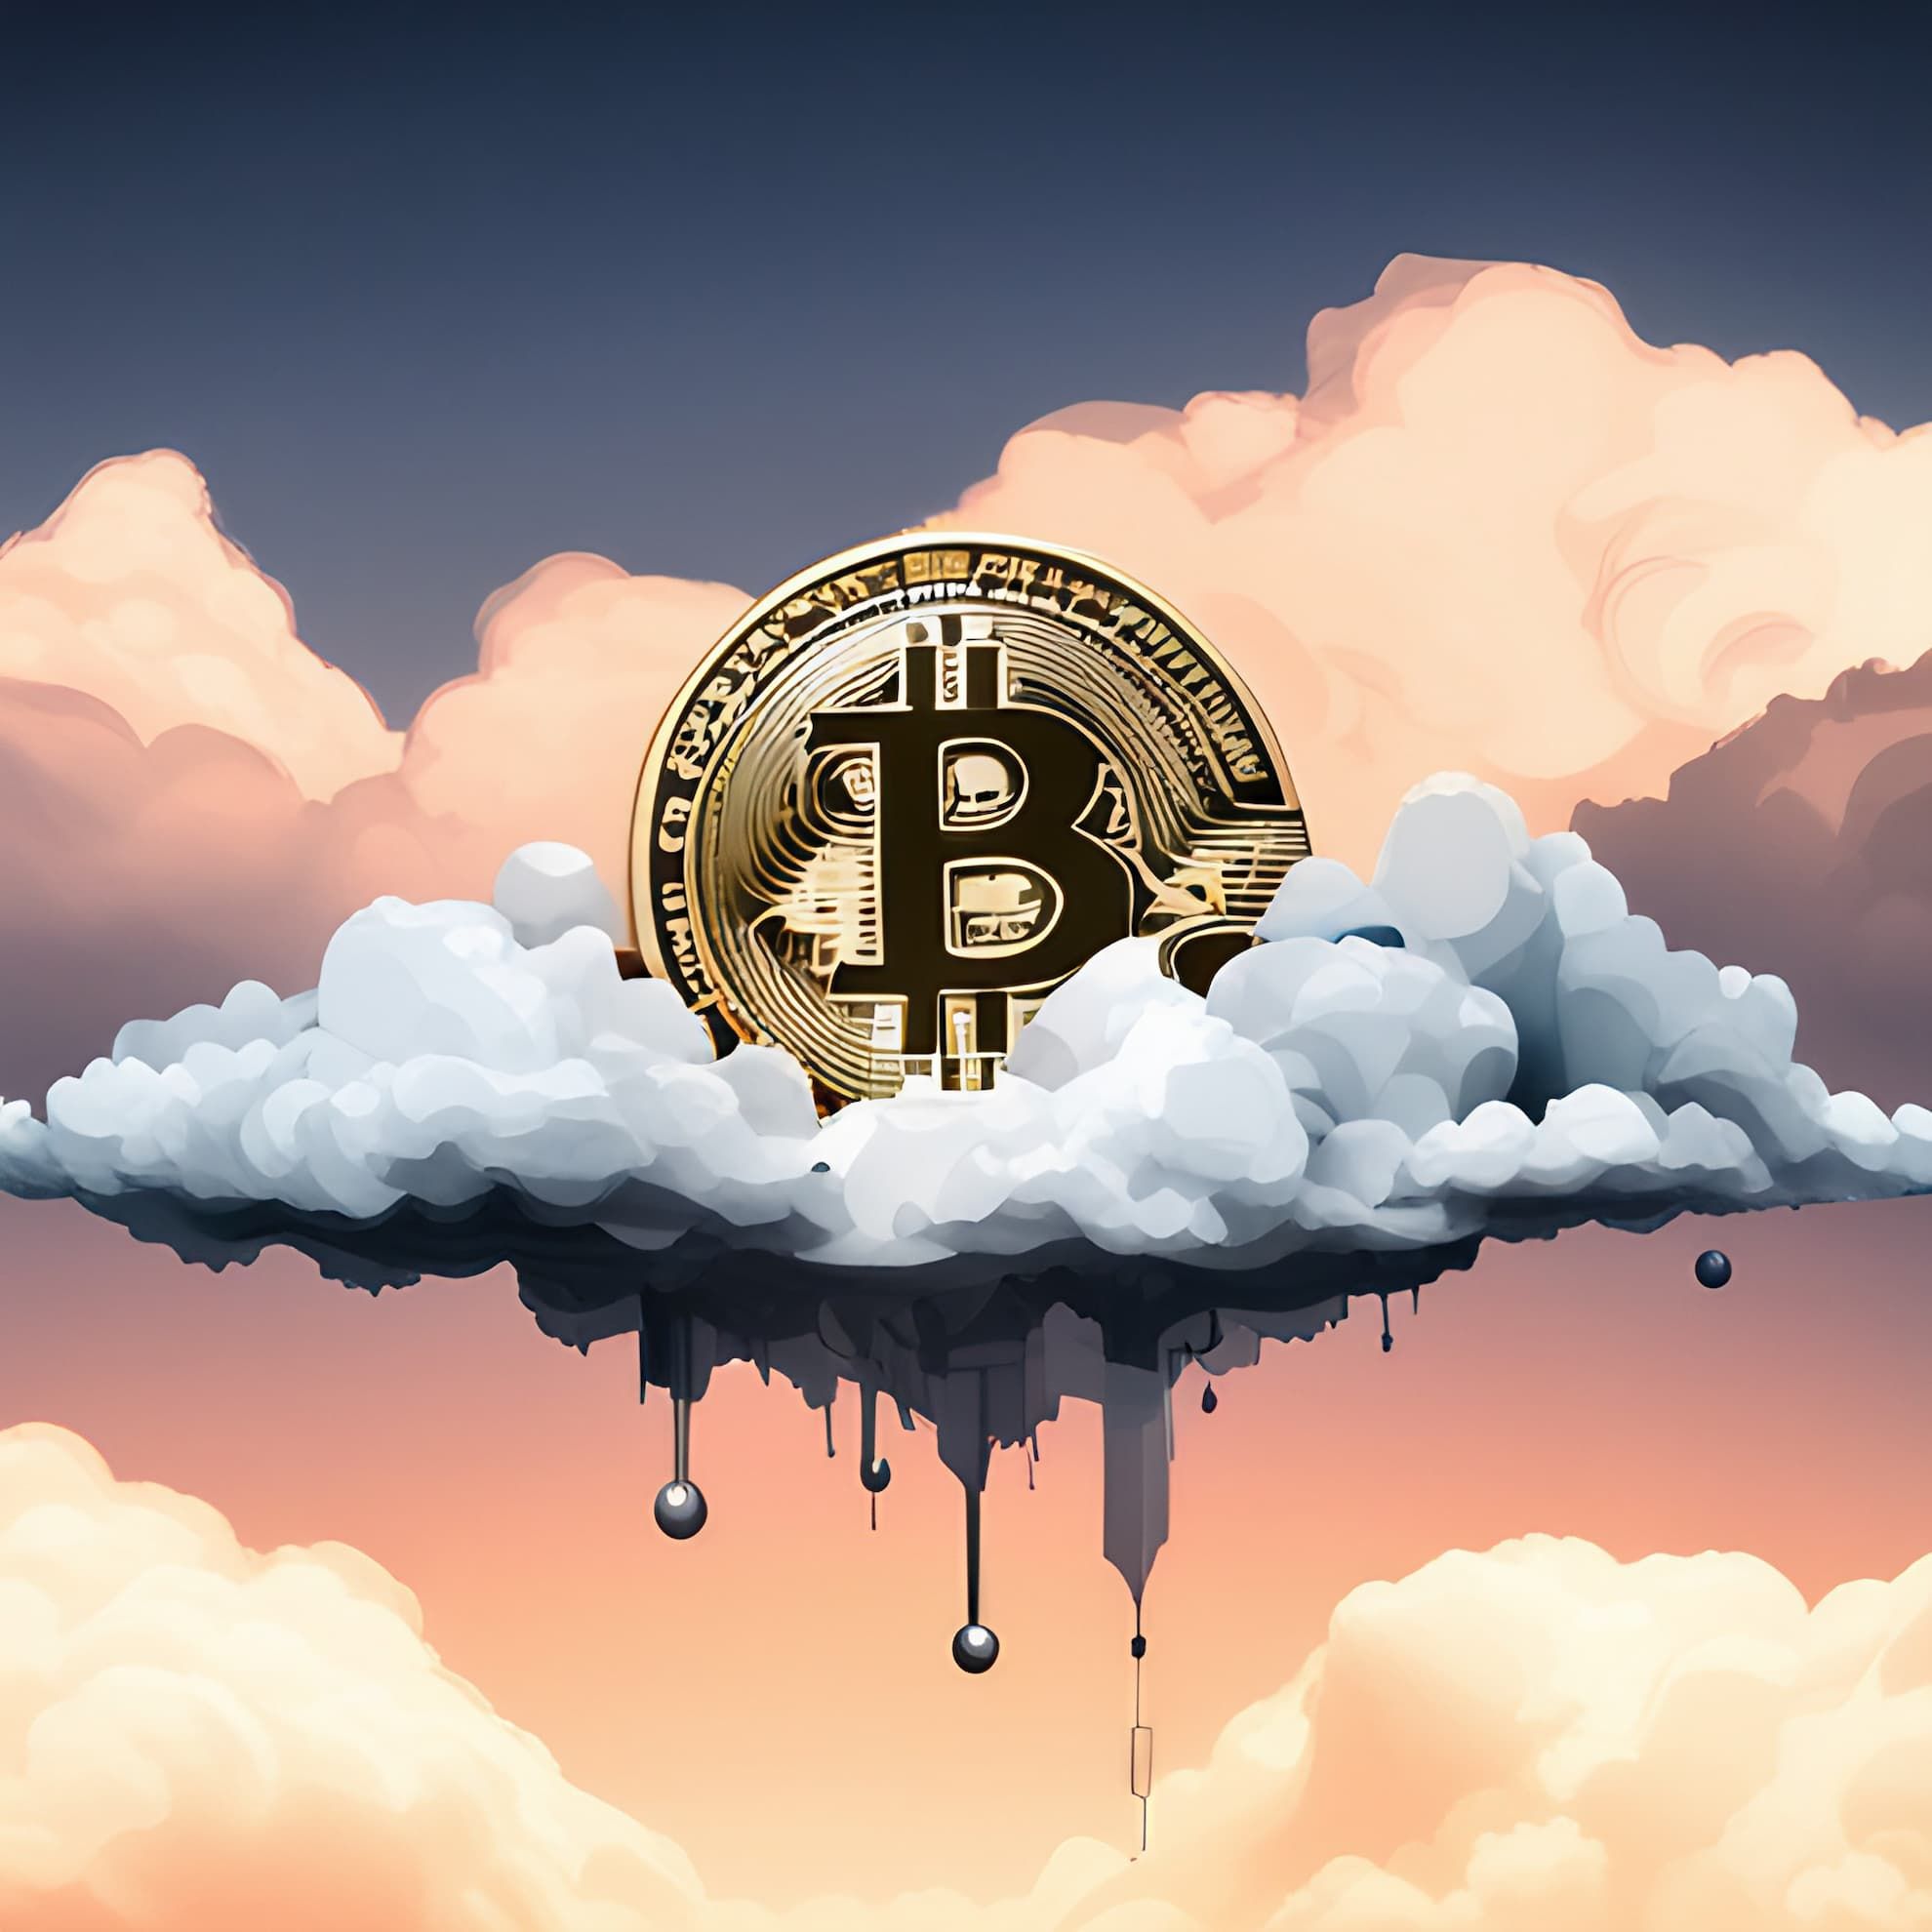 Cloud Mining Bitcoin